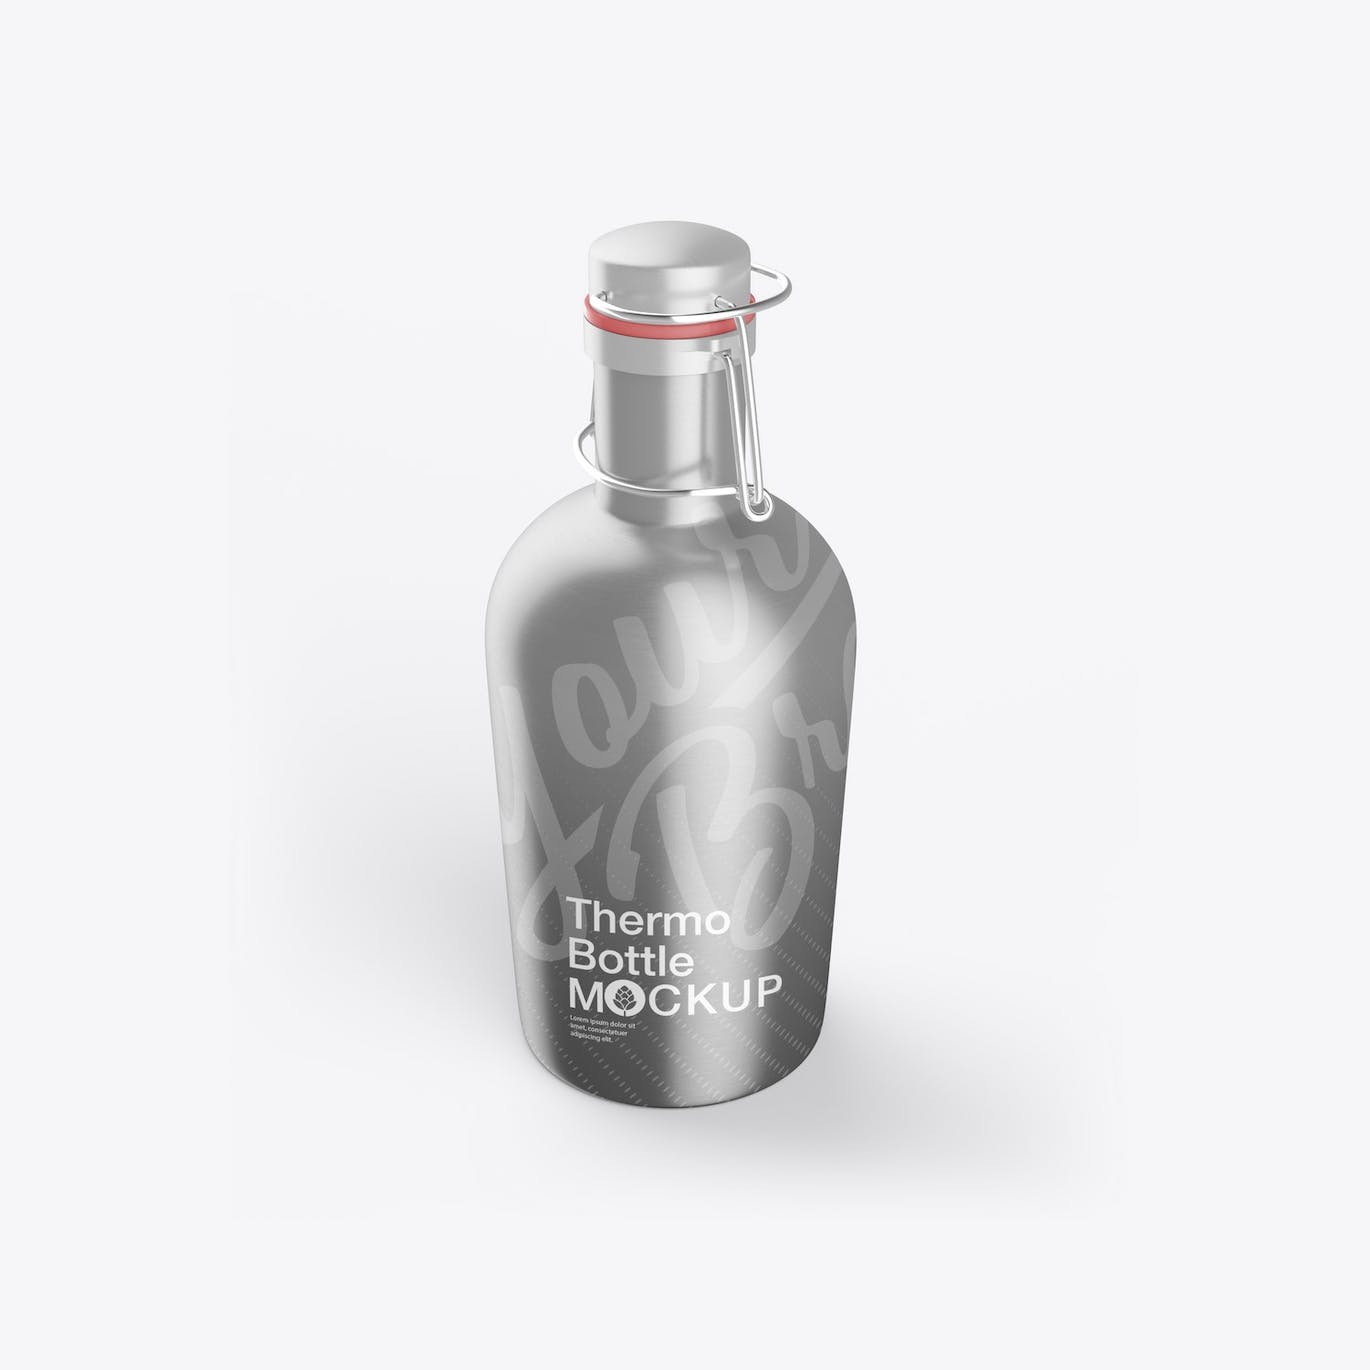 金属热水瓶包装设计样机 Thermo Bottle Mockup 样机素材 第16张